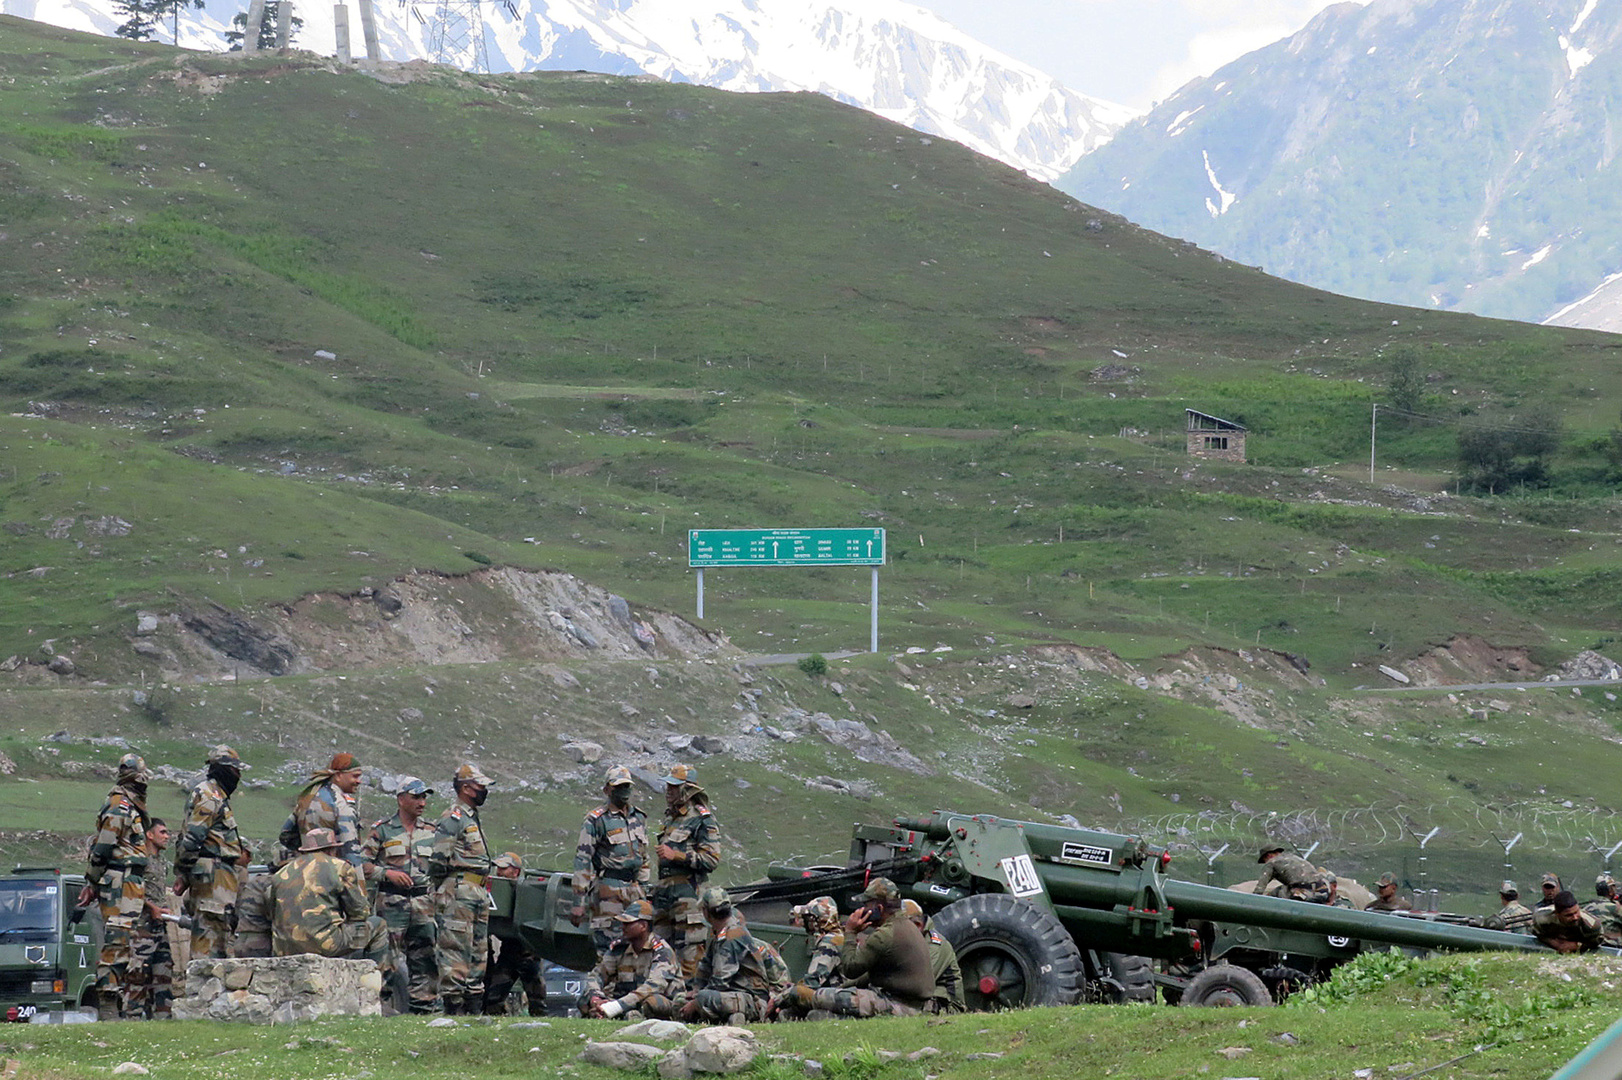 الجيش الهندي يعلن مقتل 20 من عسكرييه جراء اشتباك مع القوات الصينية